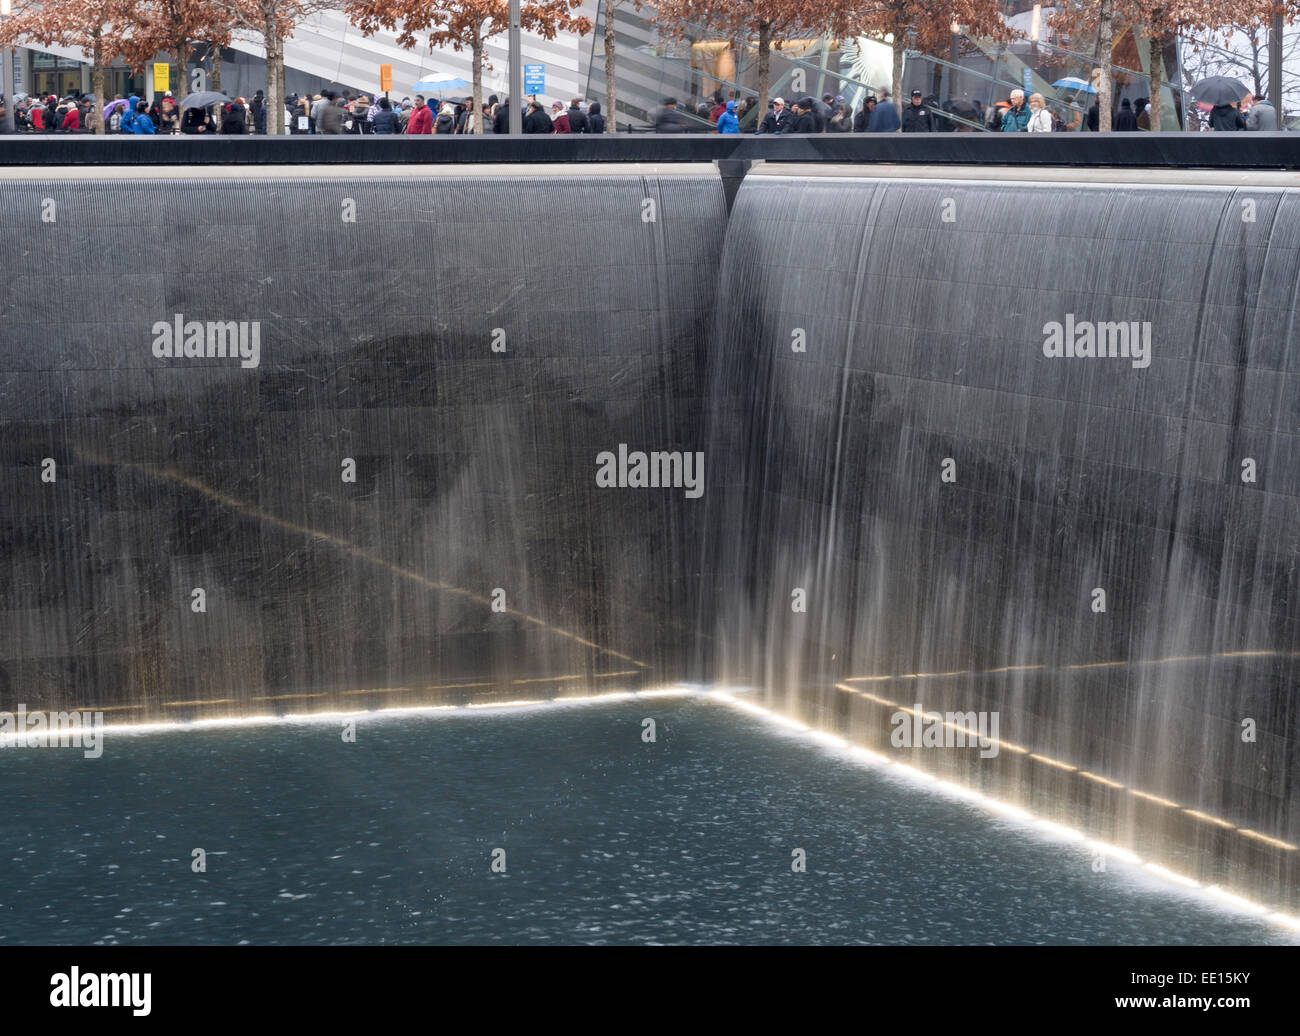 Réflexions à la memorial du 11 septembre à Ground Zero. Les touristes entourent la fosse profonde de la chute d'eau Banque D'Images